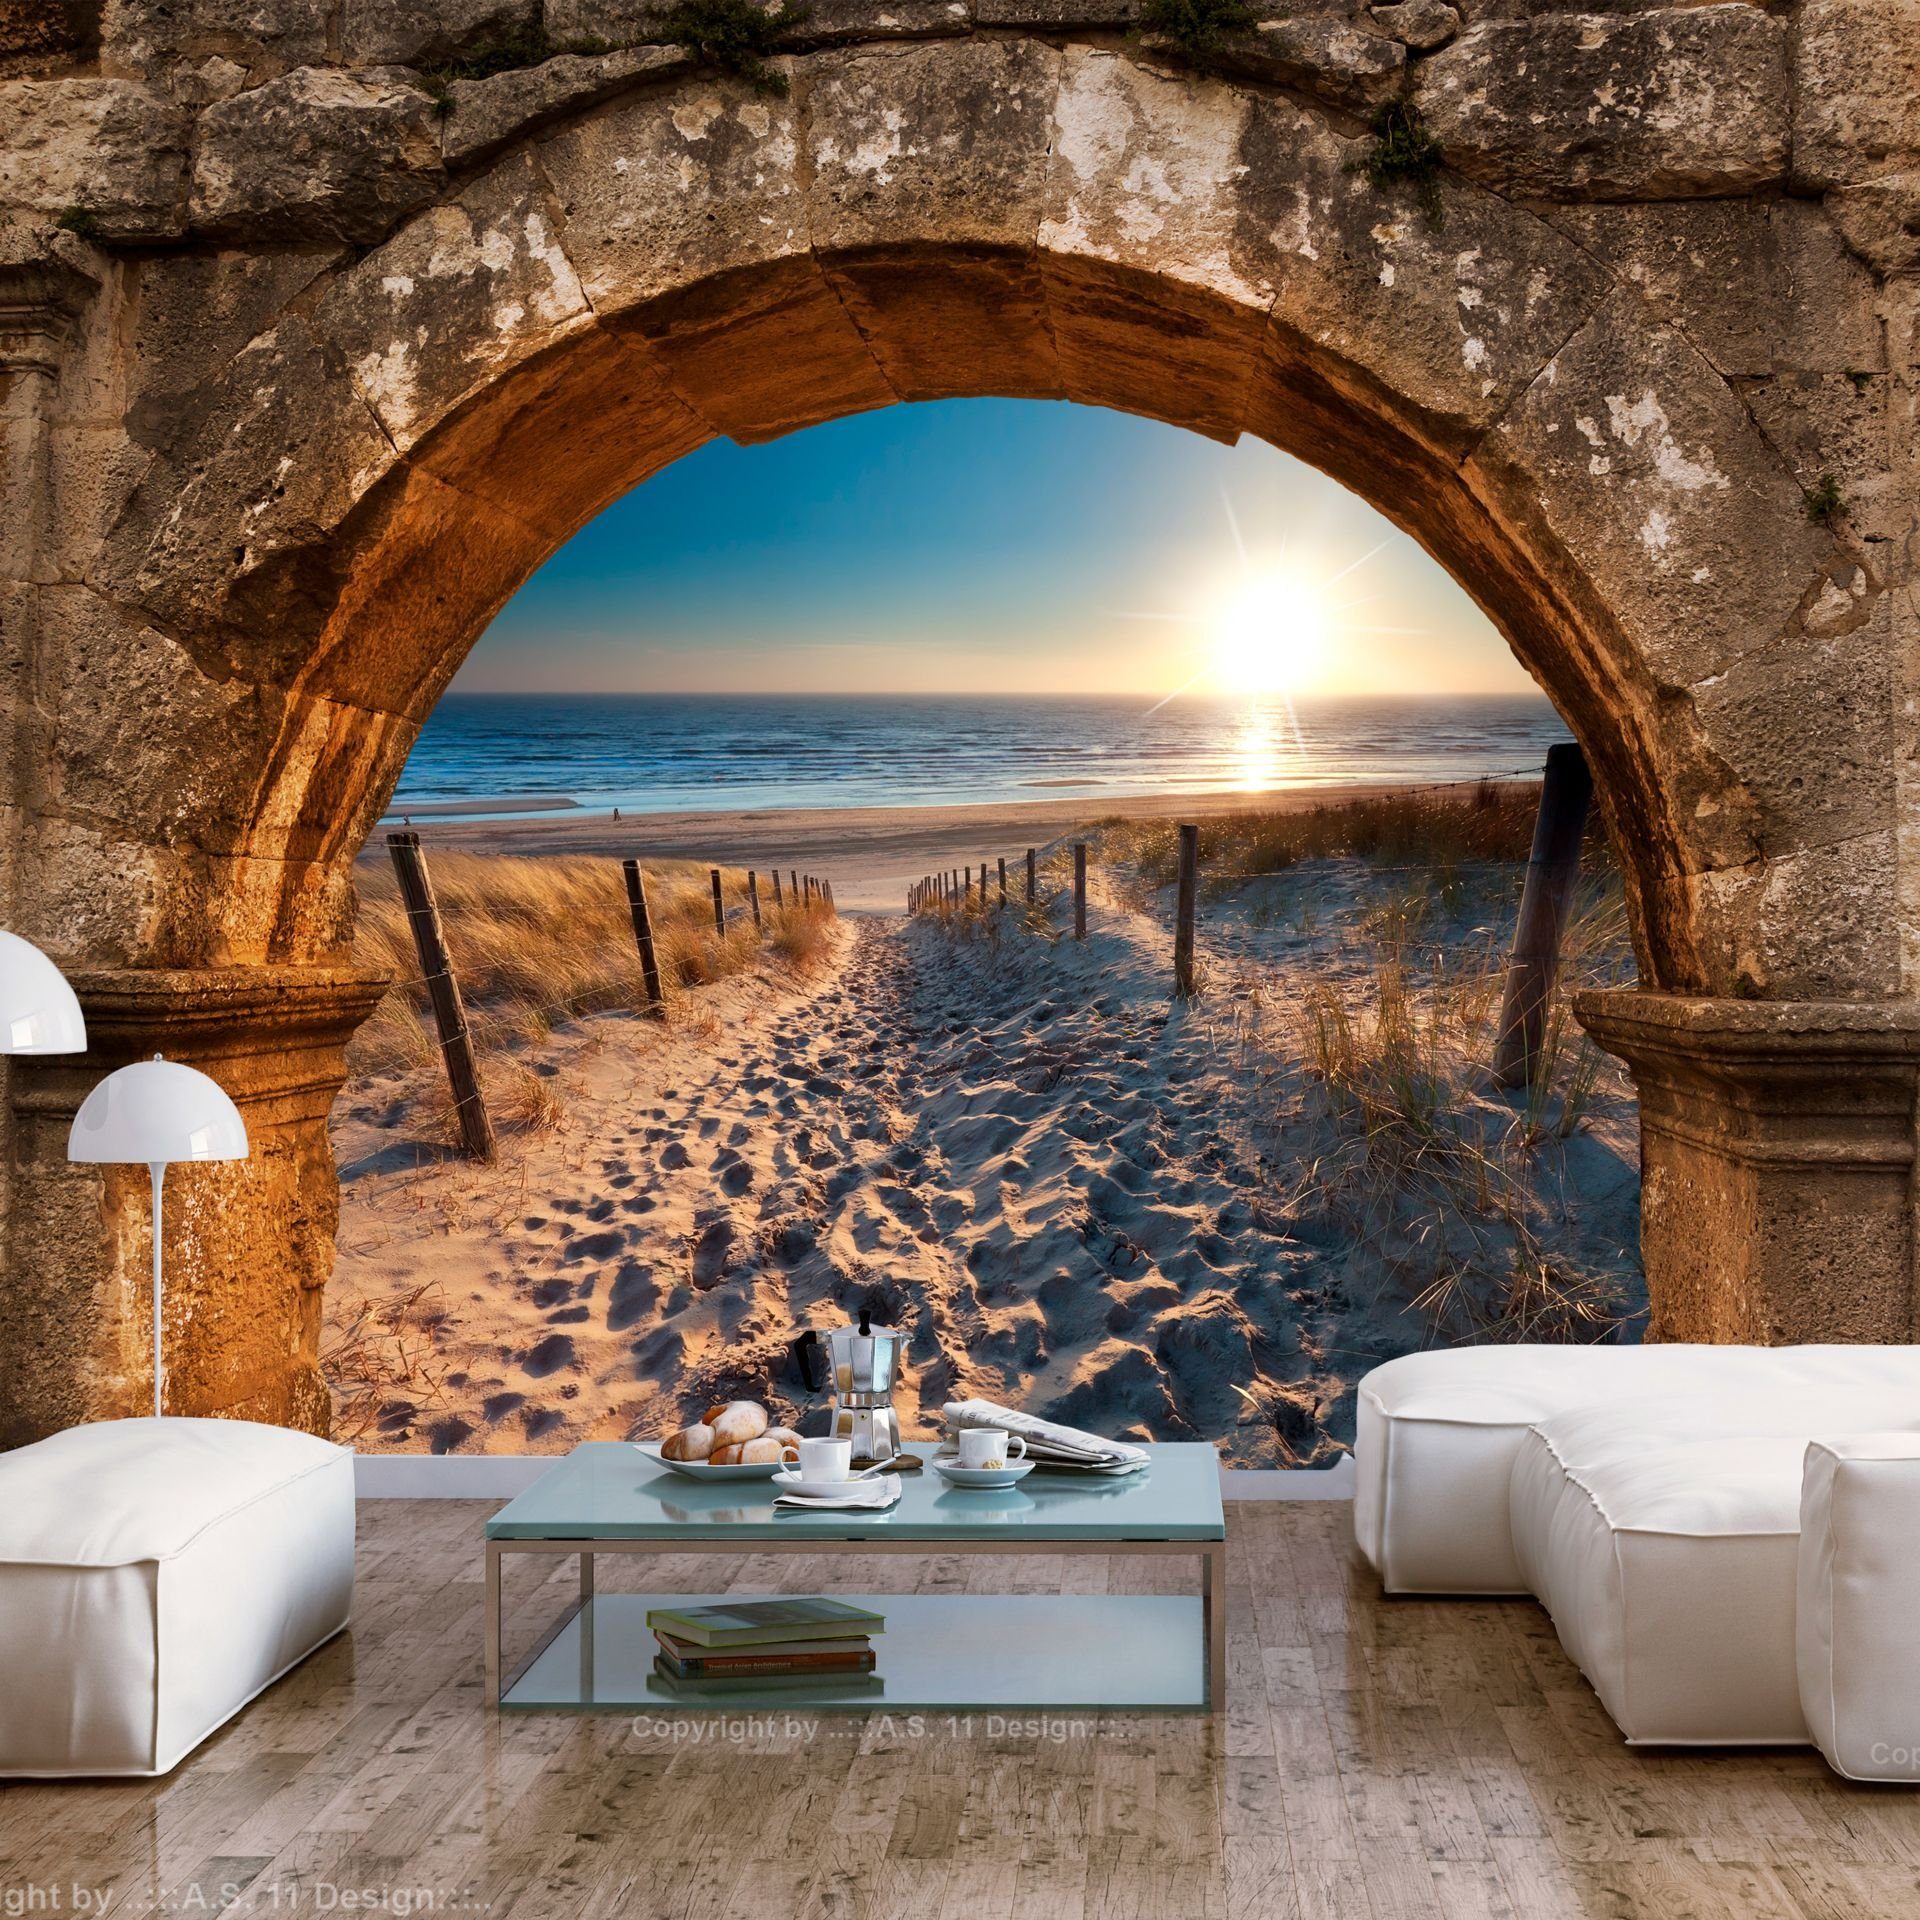 KUNSTLOFT Vliestapete Arch and Beach 1x0.7 m, halb-matt, lichtbeständige Design Tapete